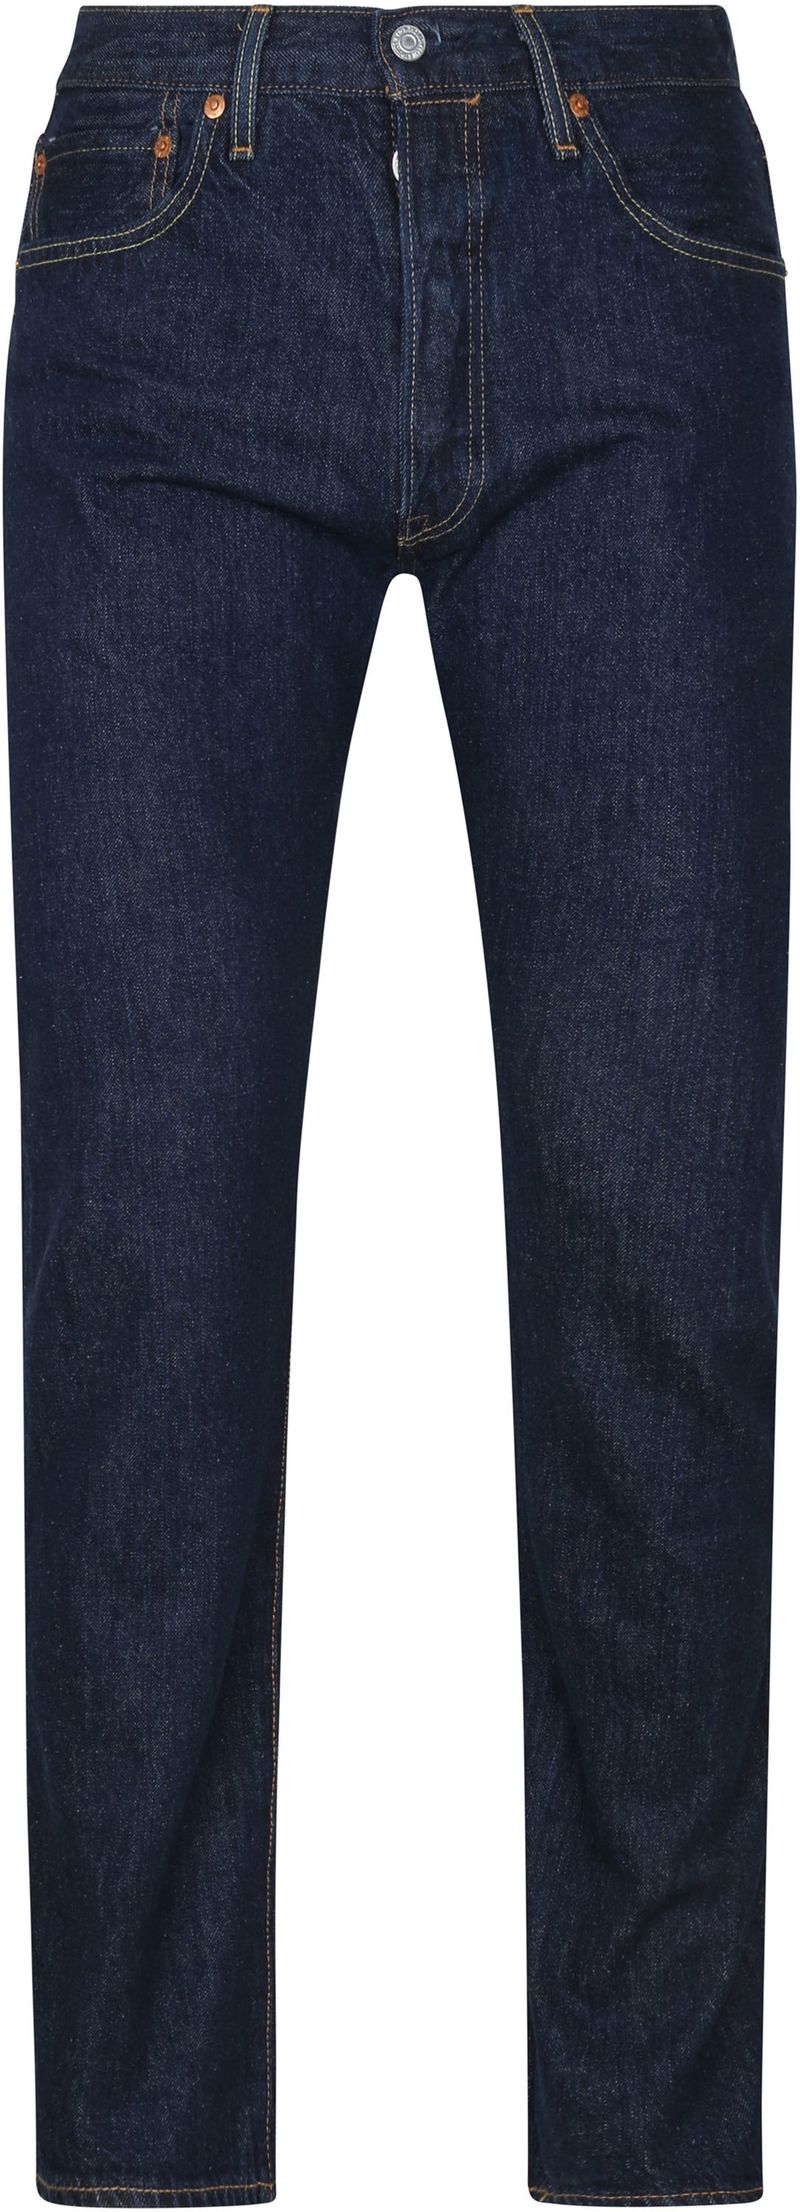 Levi’s 501 Jeans Regular Fit Dunkelblau - Größe W 34 - L 32 von Levis